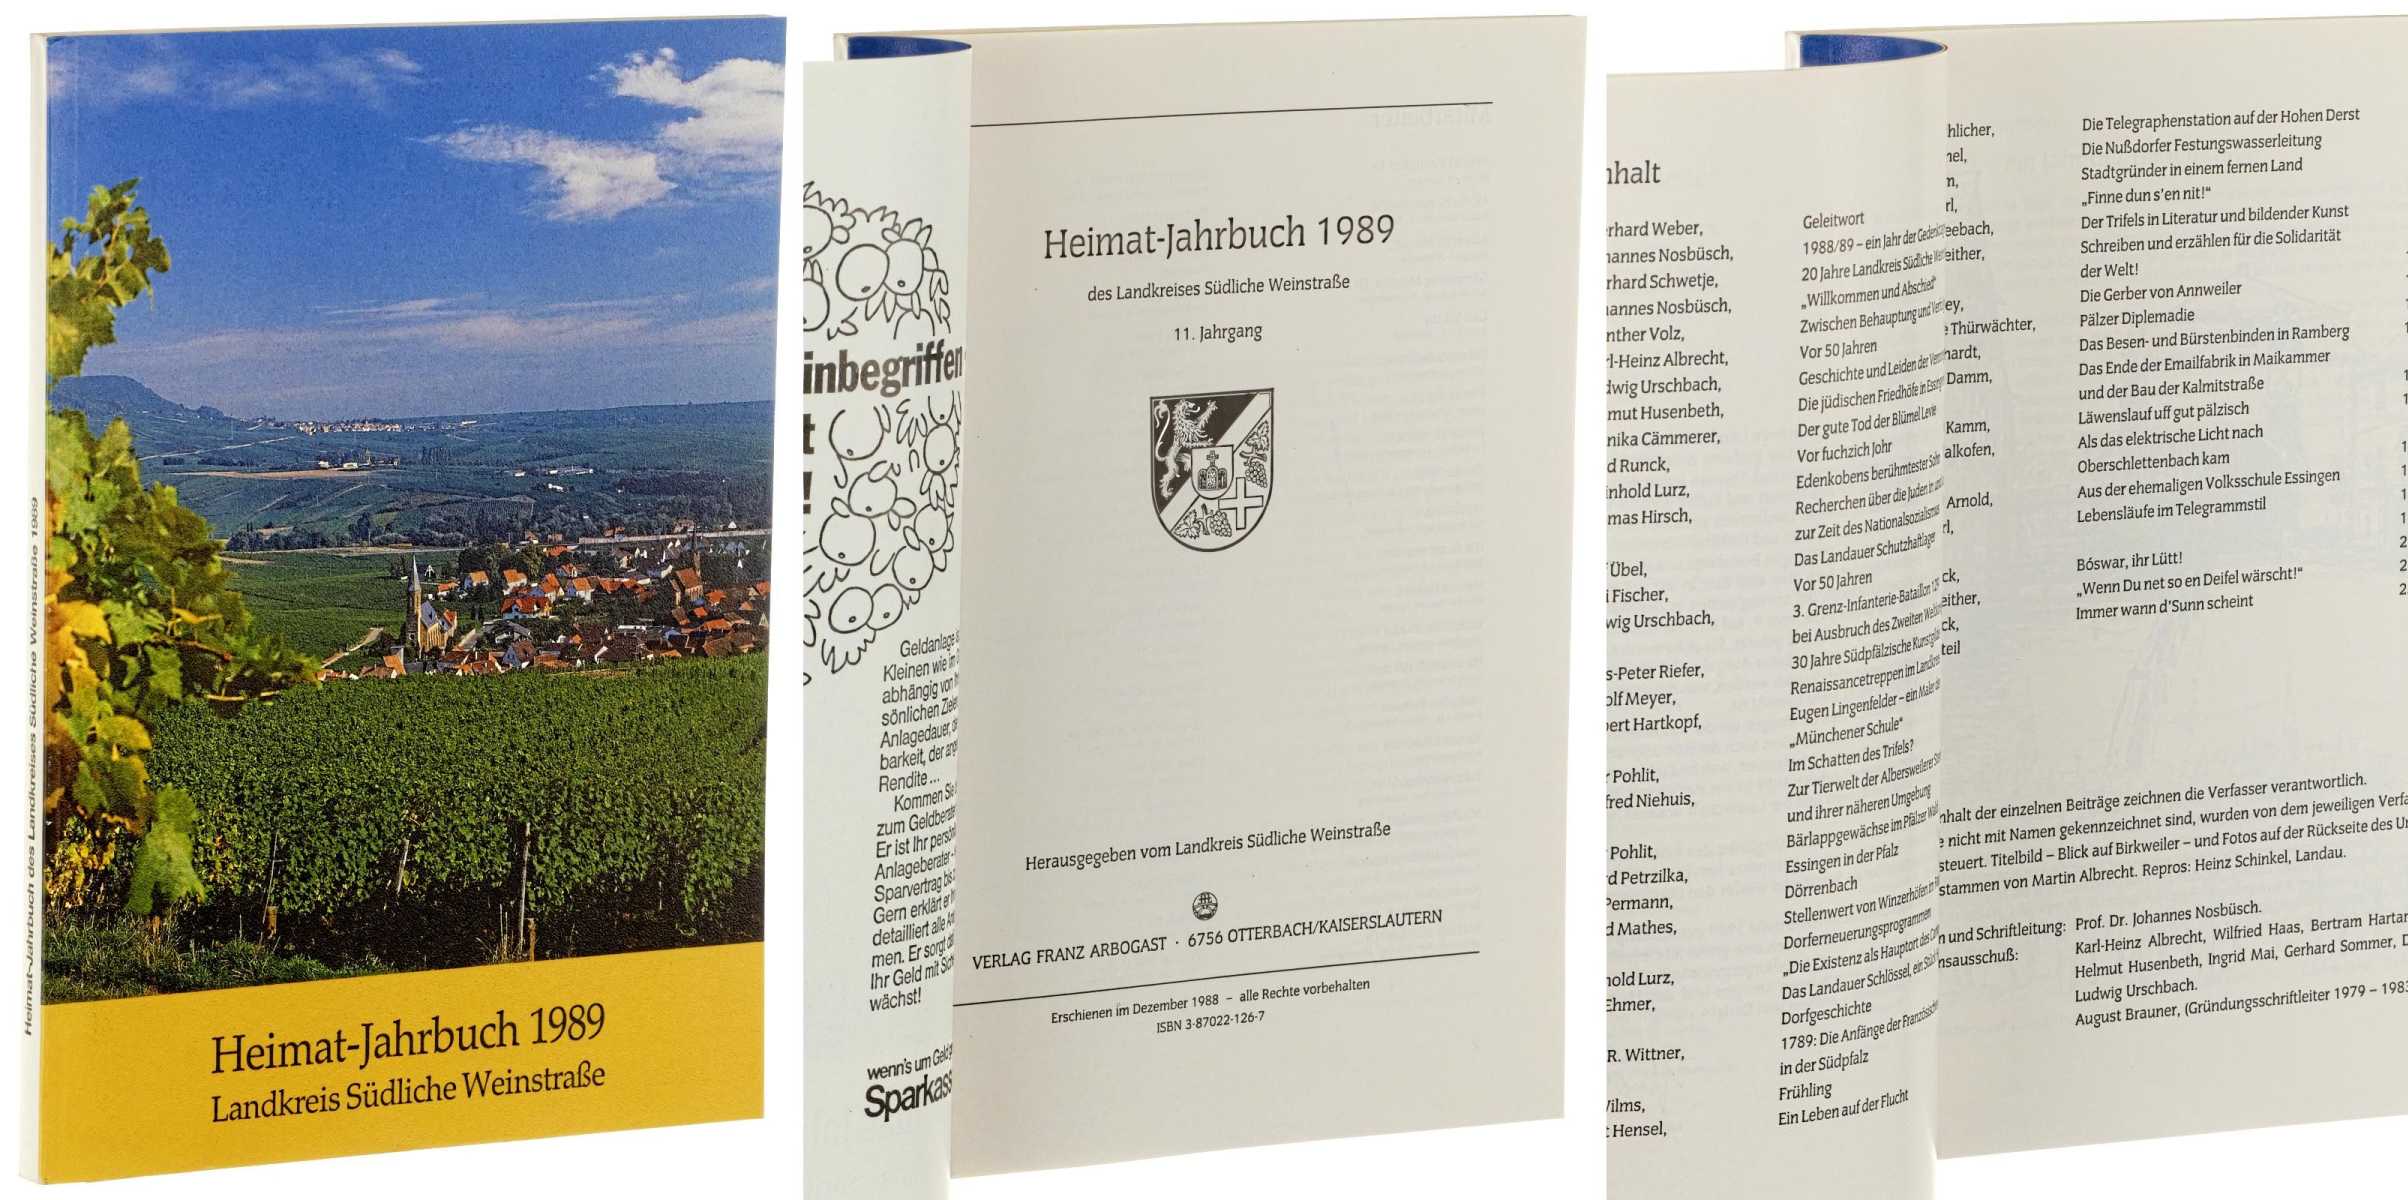   Heimat-Jahrbuch 1989 des Landkreises Südliche Weinstraße. 